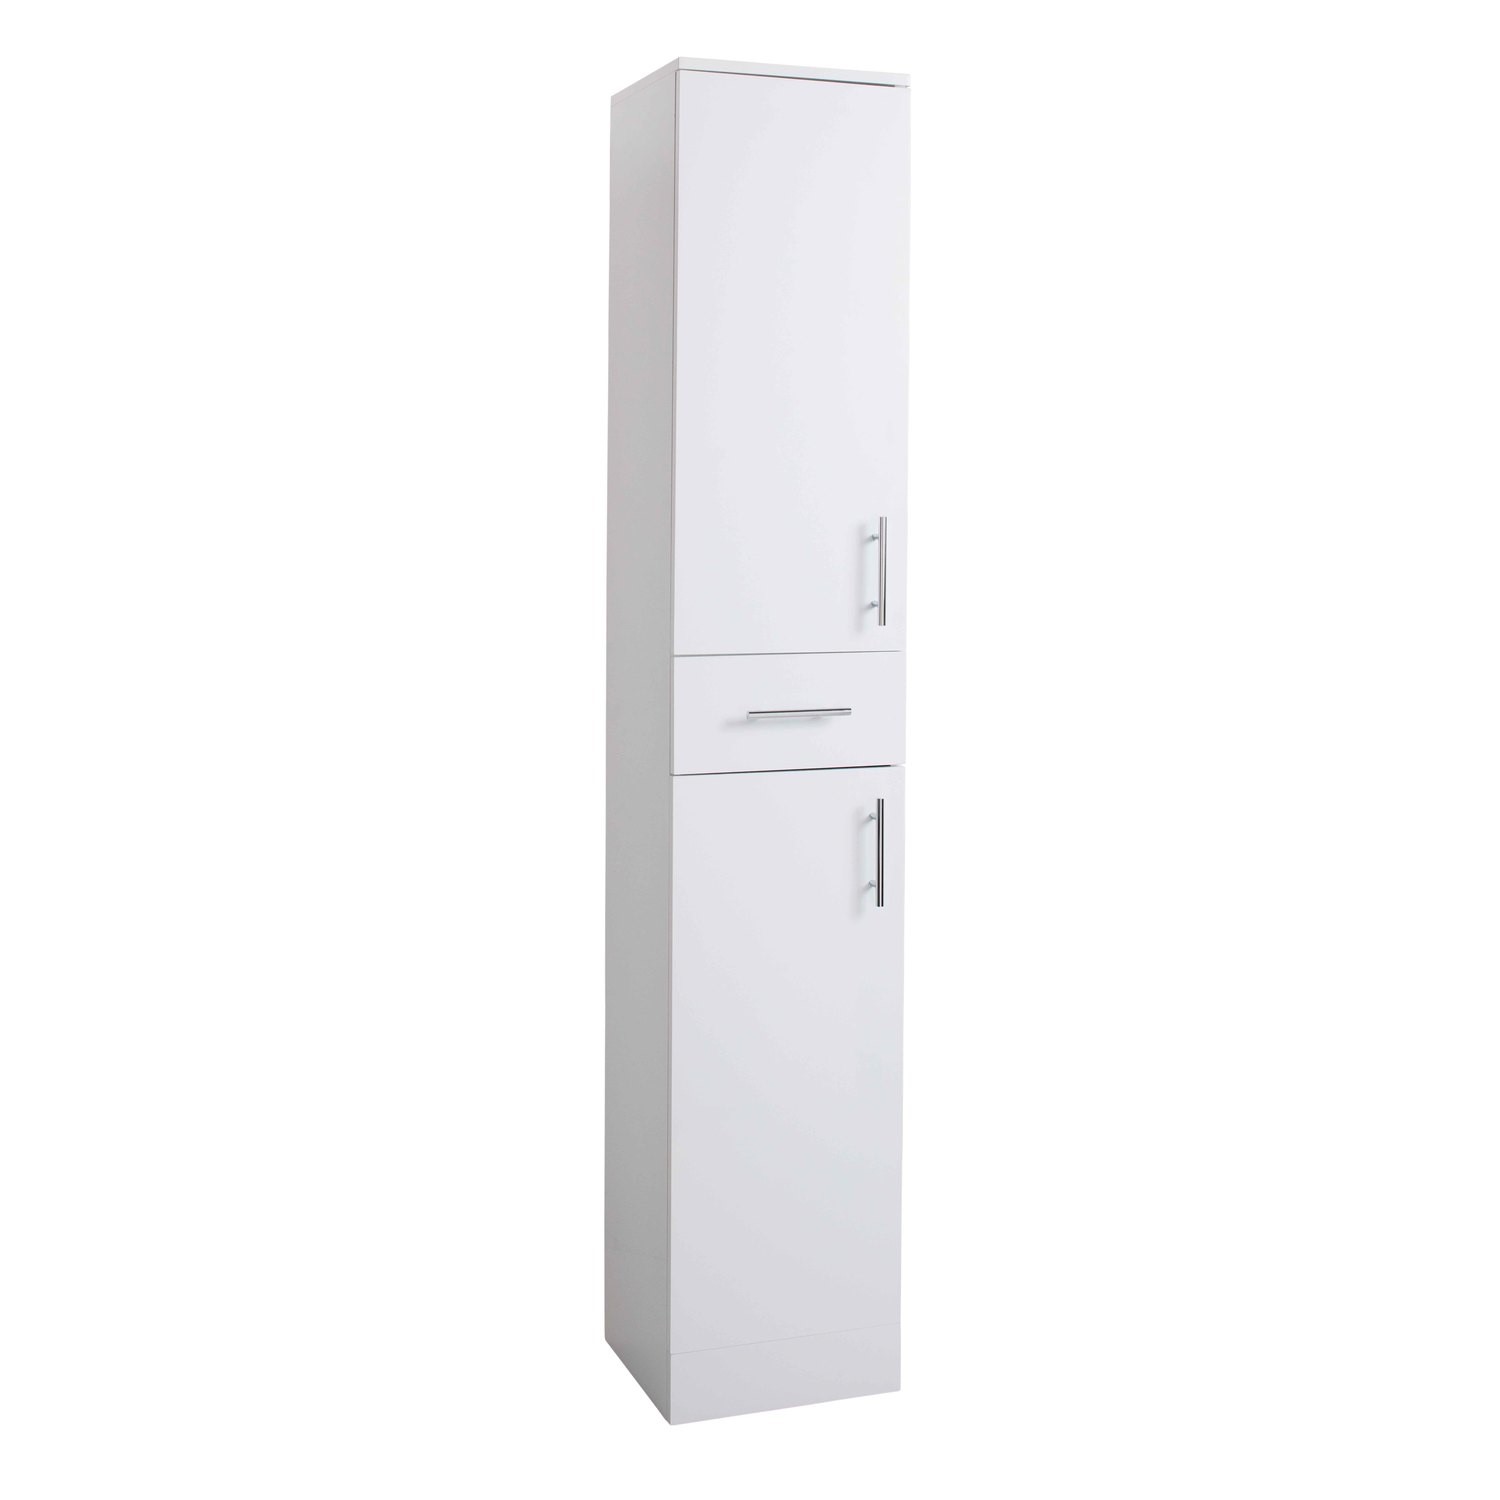 White Tall Boy Bathroom Cabinet Storage Unit W350 X H1902mm